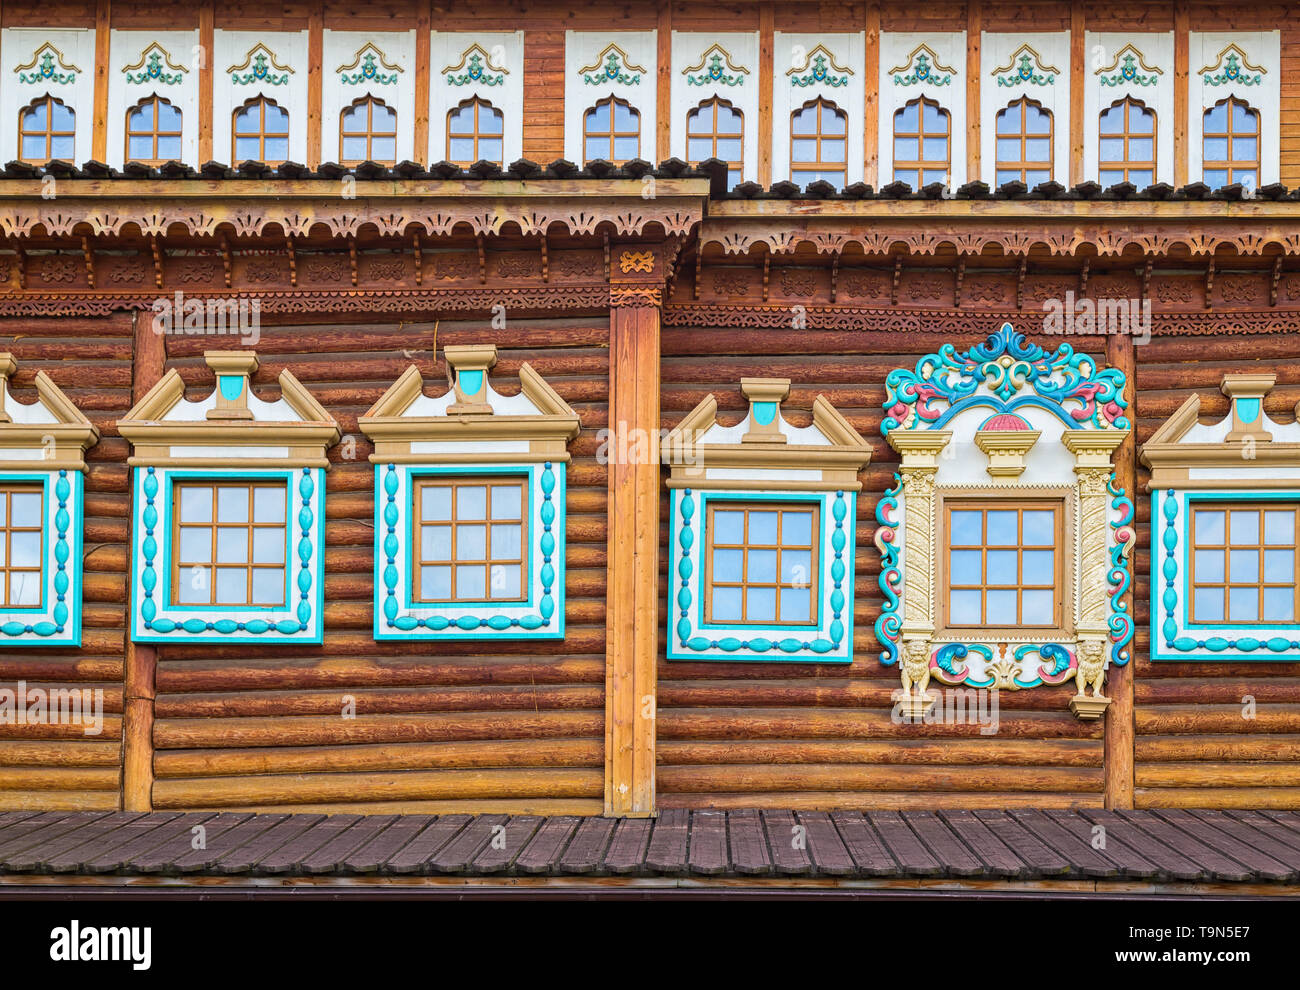 Dekorierte Fenster in alten Haus anmelden. Russische traditionelle Architektur. Tsar's Palace in Holz Kolomenskoye Park, Moskau, Russland. Stockfoto